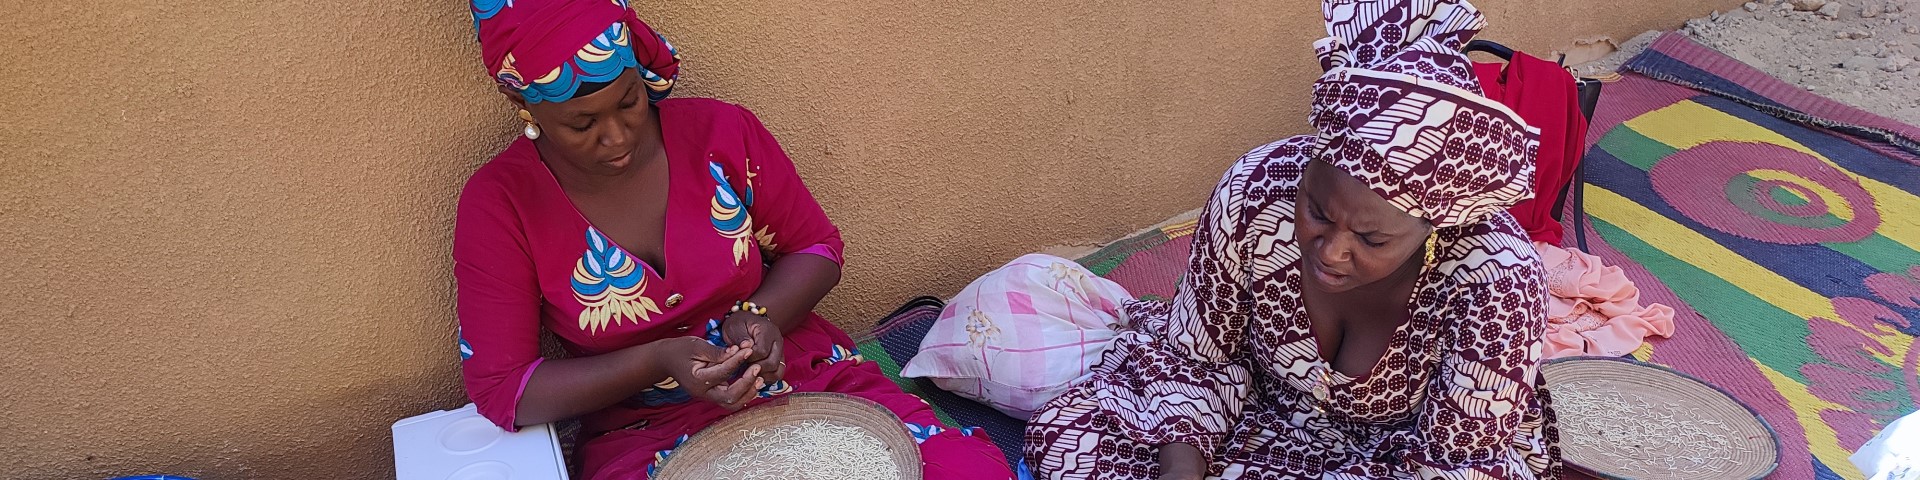 Zwei Frauen der Frauenvereinigung in Dirè sitzen mit großen Tellern im Schneidersitz auf dem Boden und verarbeiten Weizen.